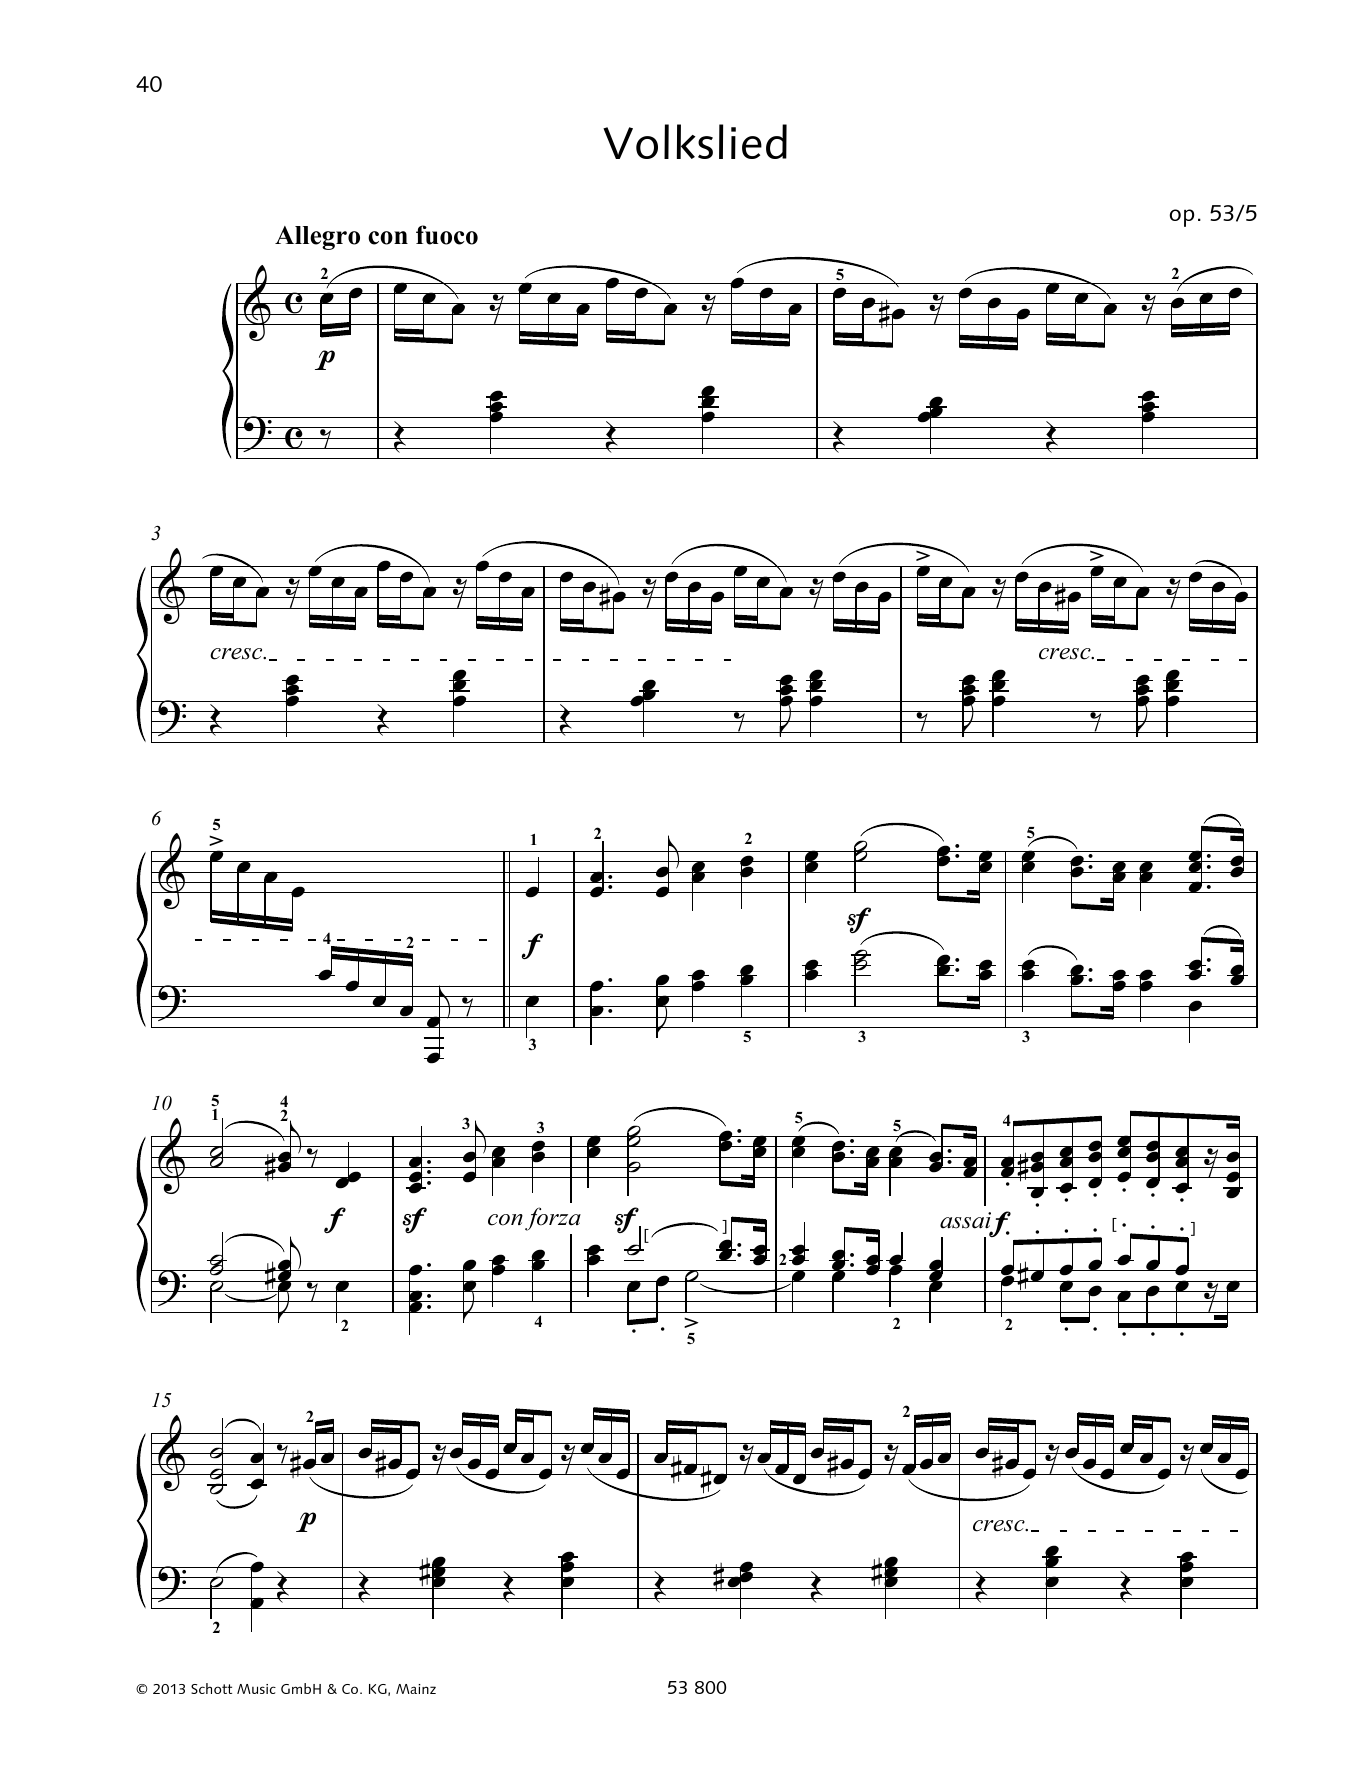 Download Felix Mendelssohn Bartholdy Allegro don fuoco Sheet Music